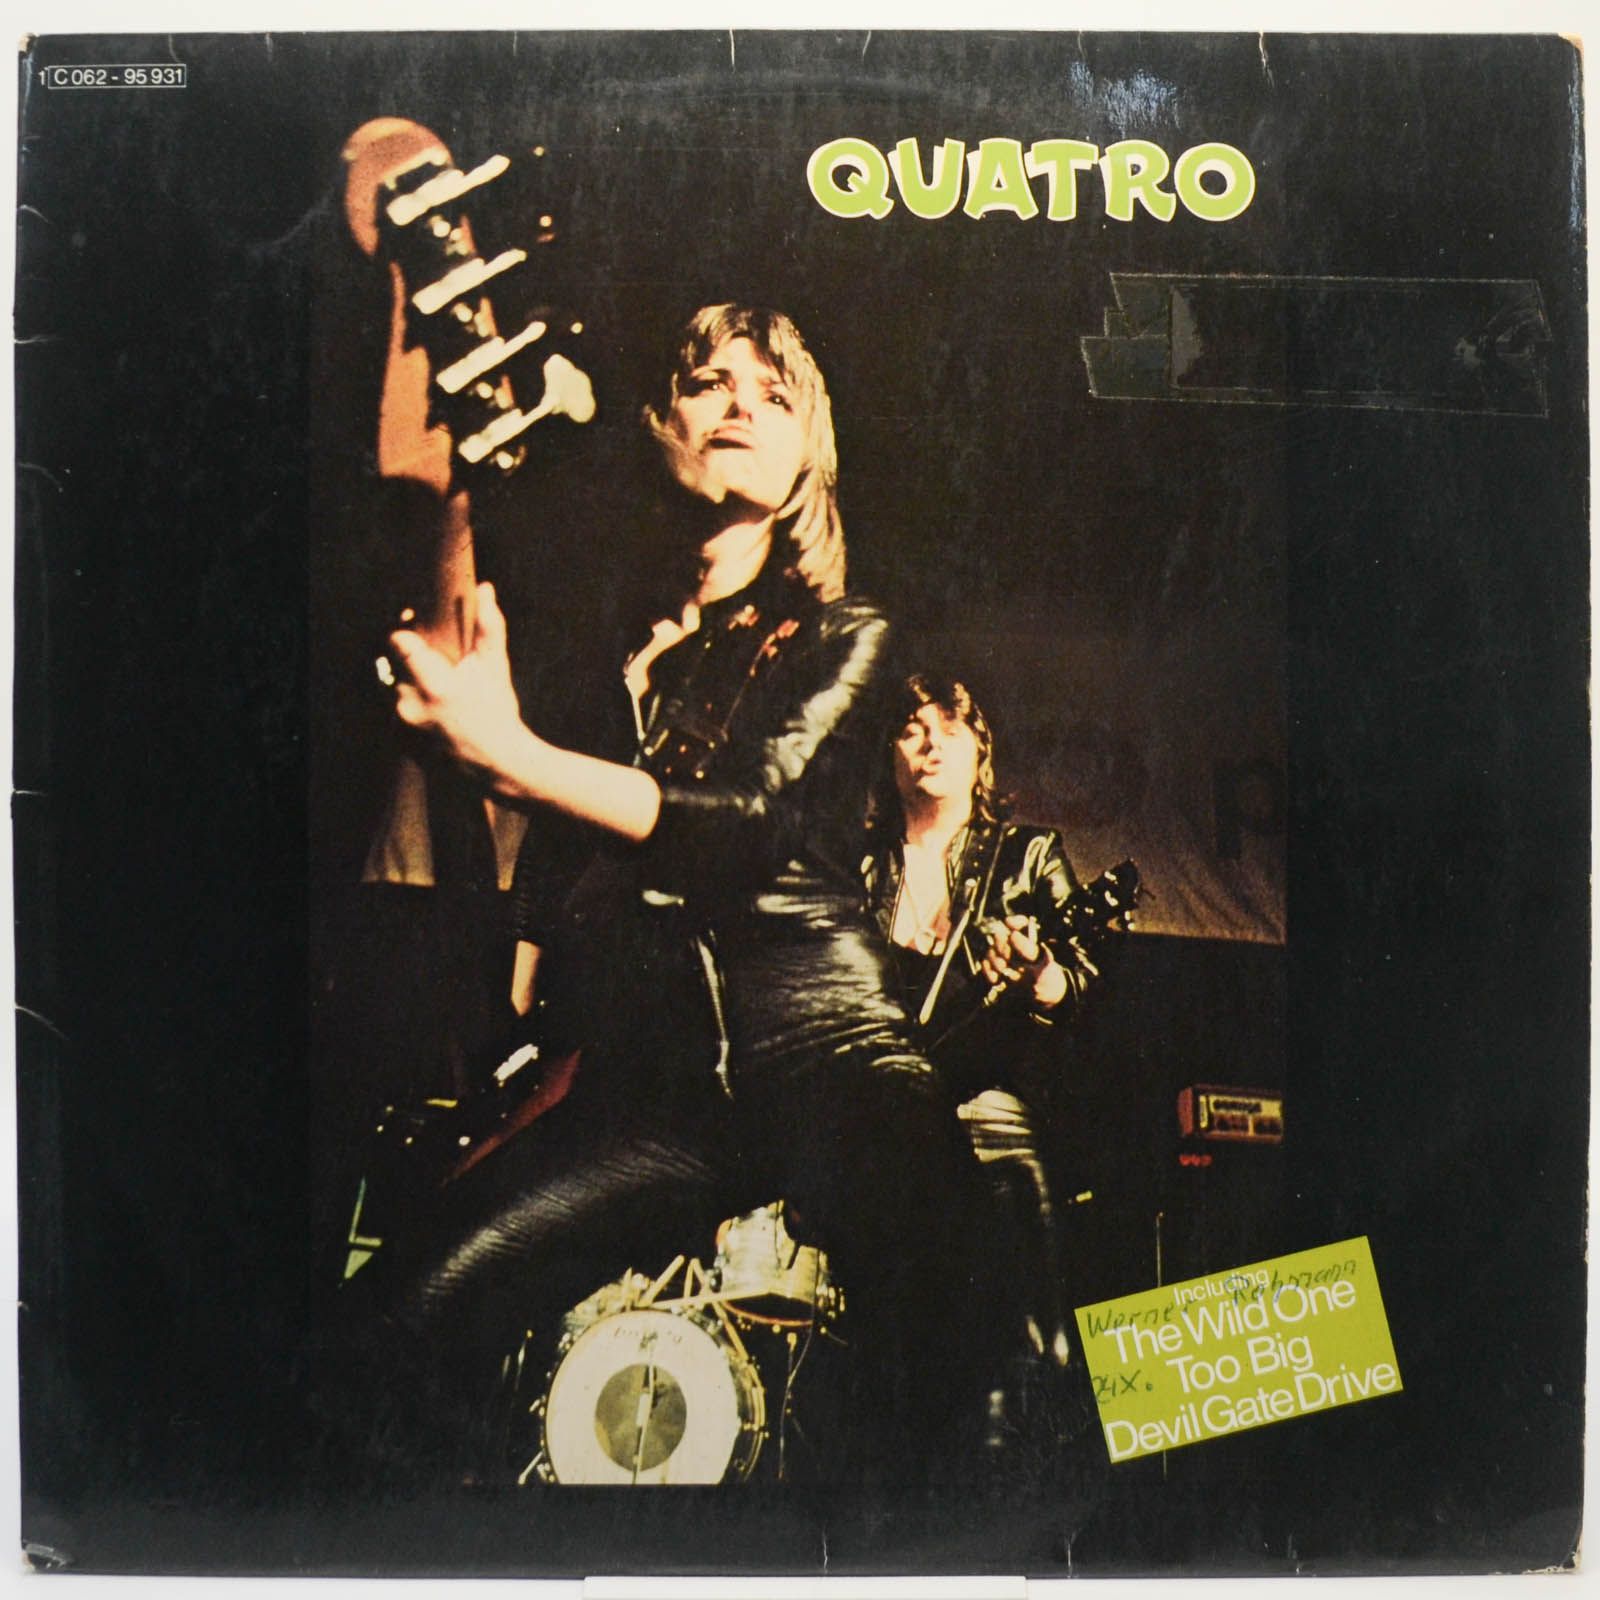 Suzi Quatro — Quatro, 1974